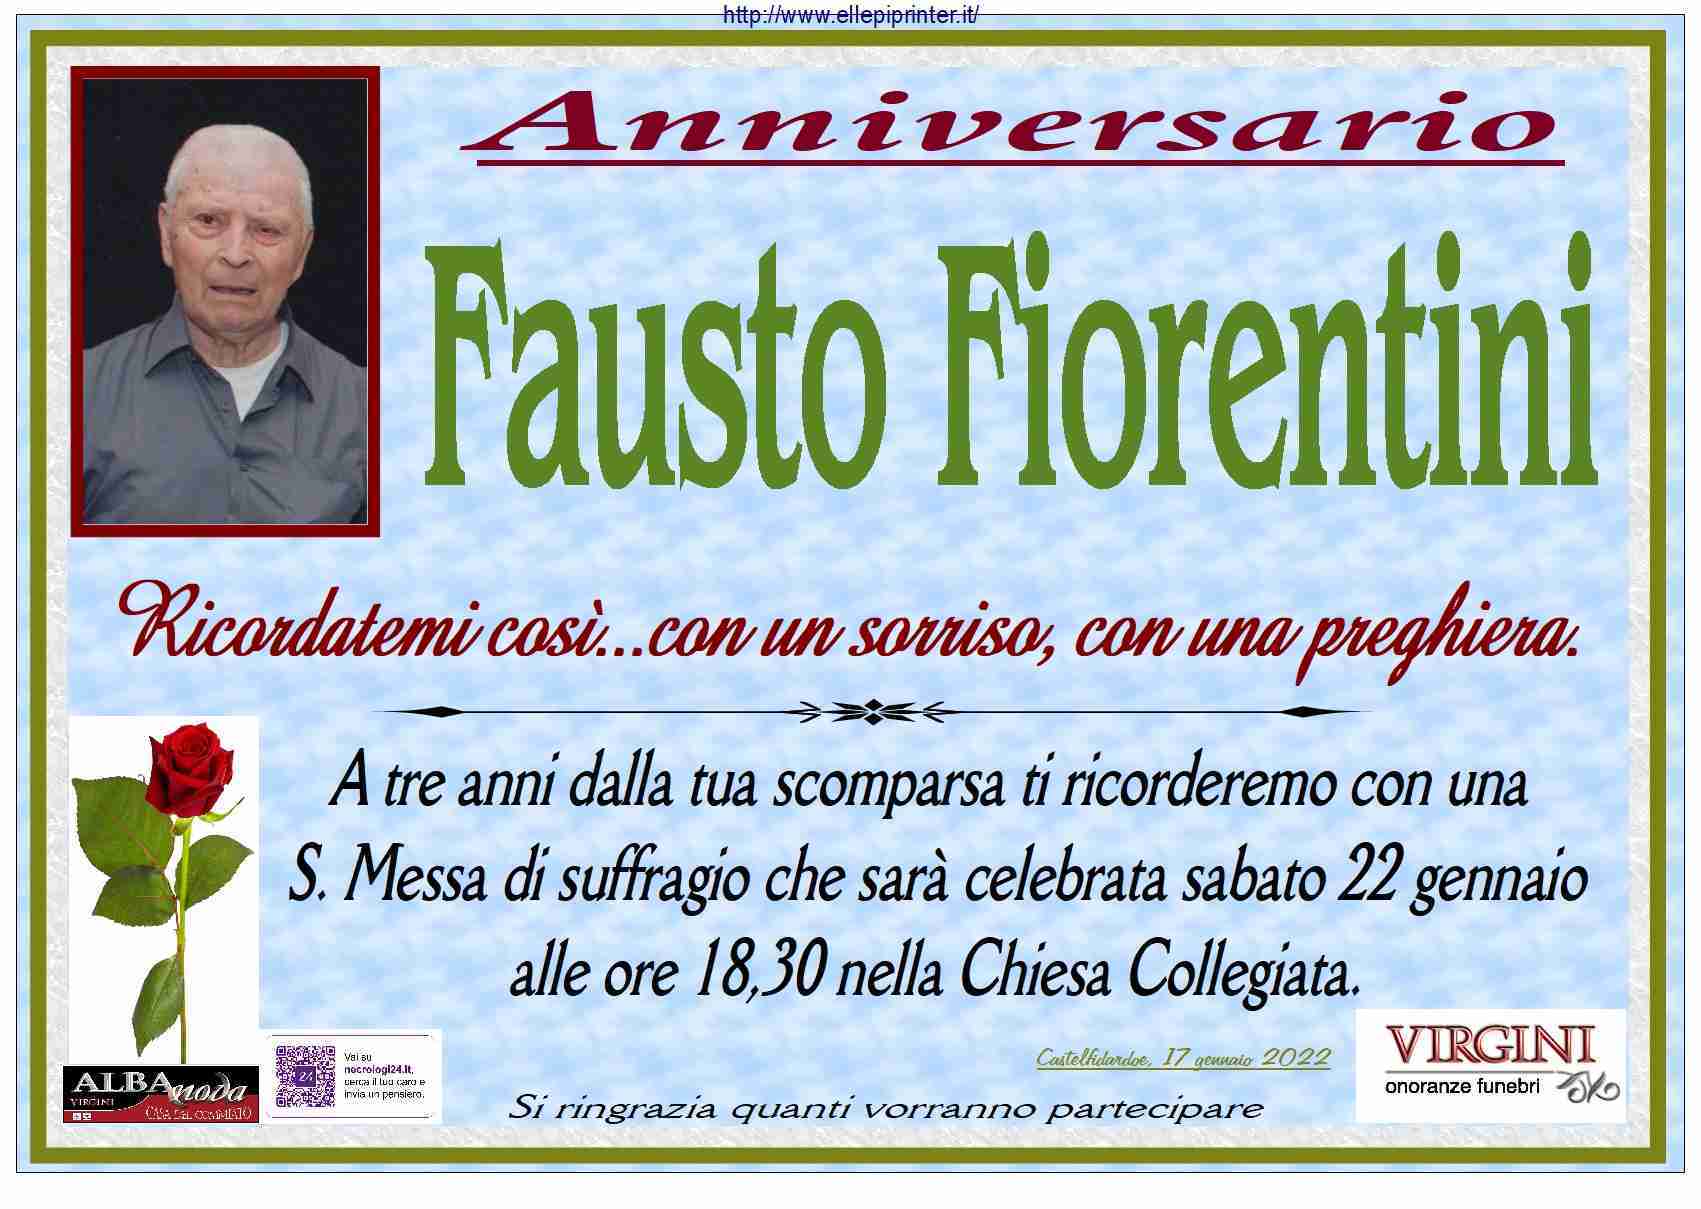 Fausto Fiorentini